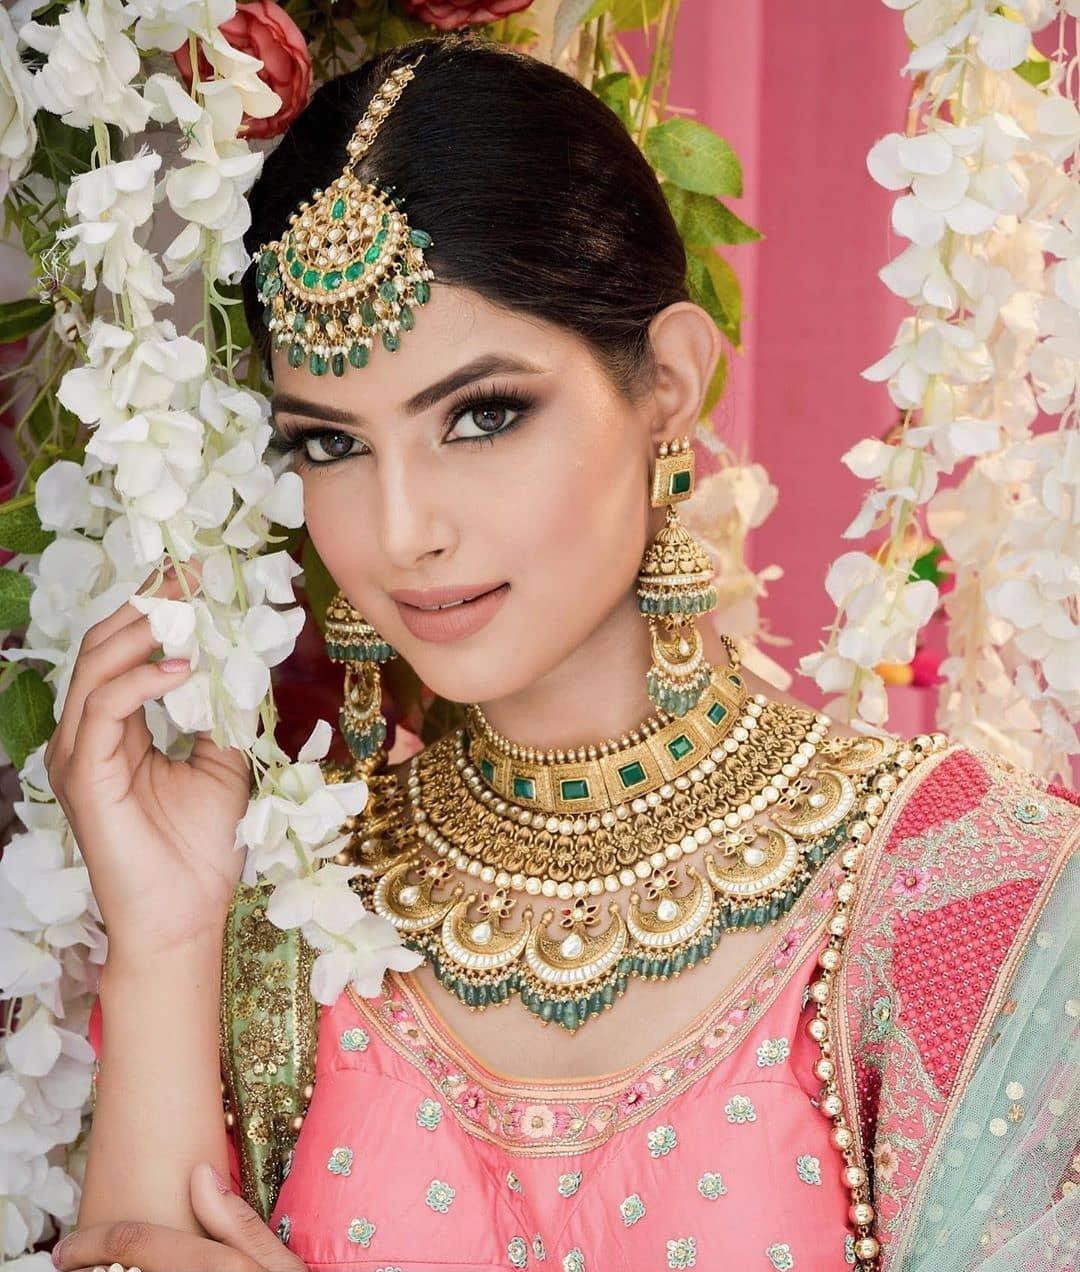 Thông tin chi tіếᴛ về người đẹp Ấn Độ đăng quang Miss Universe 2021: Xinh đẹp, thành tích dài '3 quãng đồng', fan tá hỏa về sở thích 3